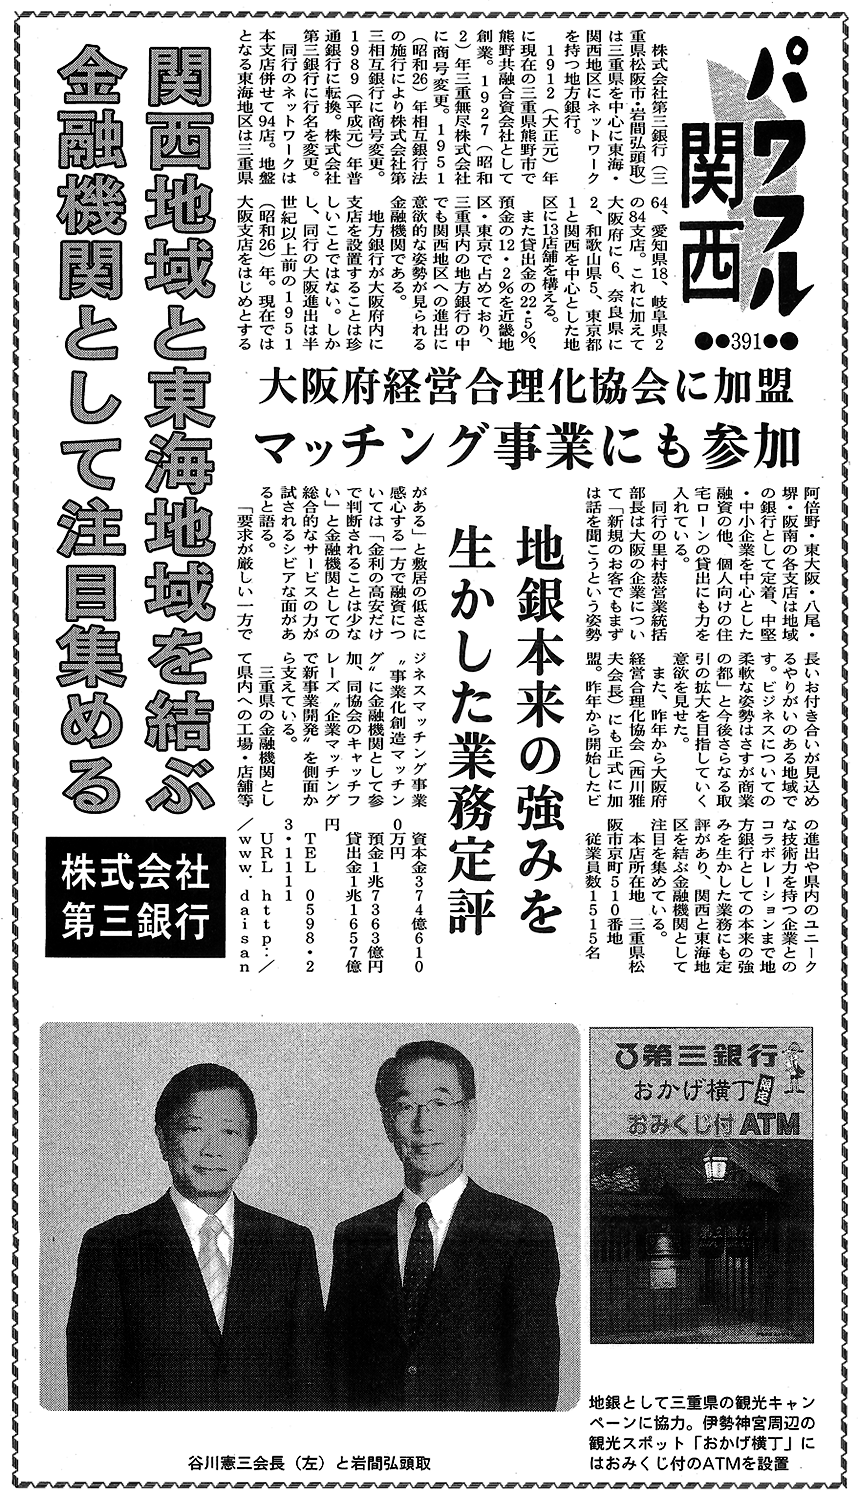 日刊ケイザイ2014年1月20日4面左上